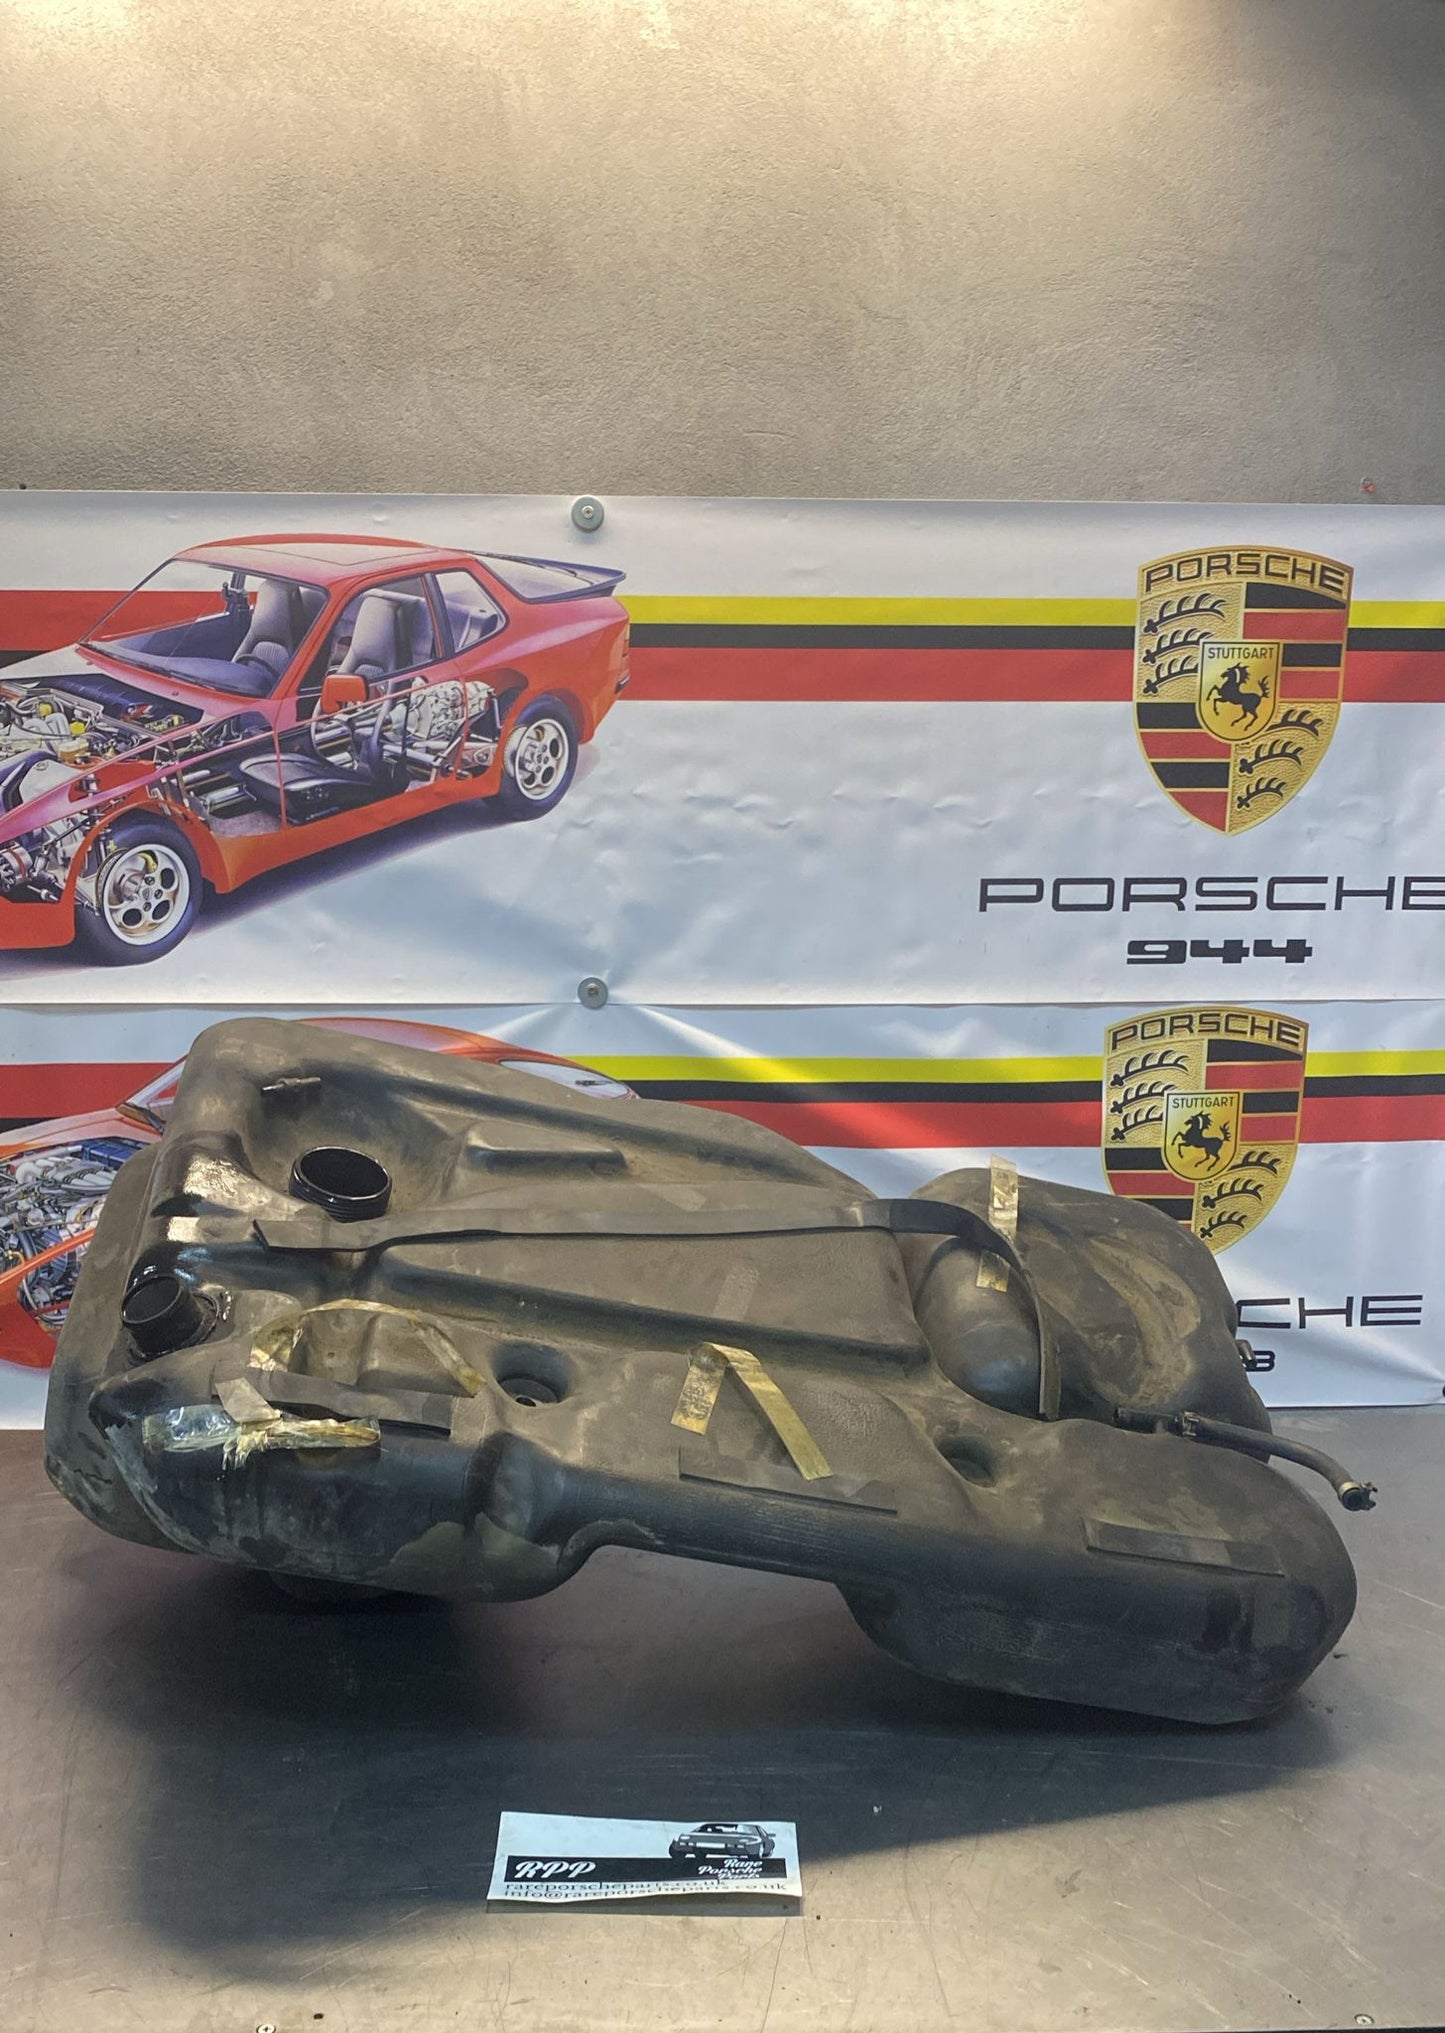 Serbatoio carburante in plastica Porsche 944, 95120102103, ricambio o riparazione, foto di studio